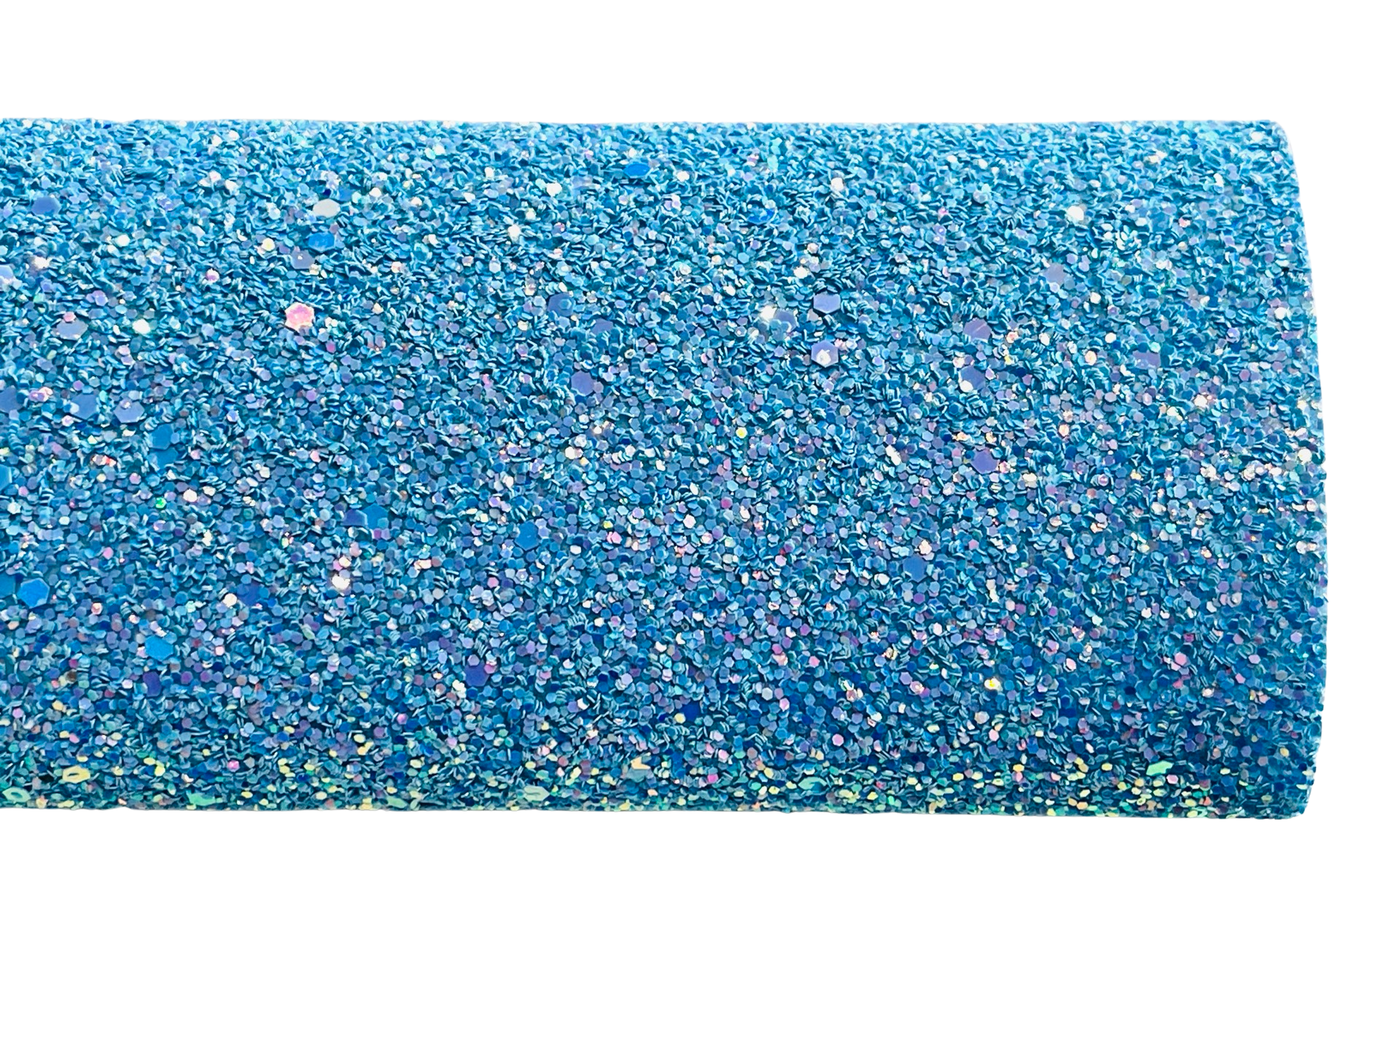 Blue Mermaid Magic Chunky Glitter